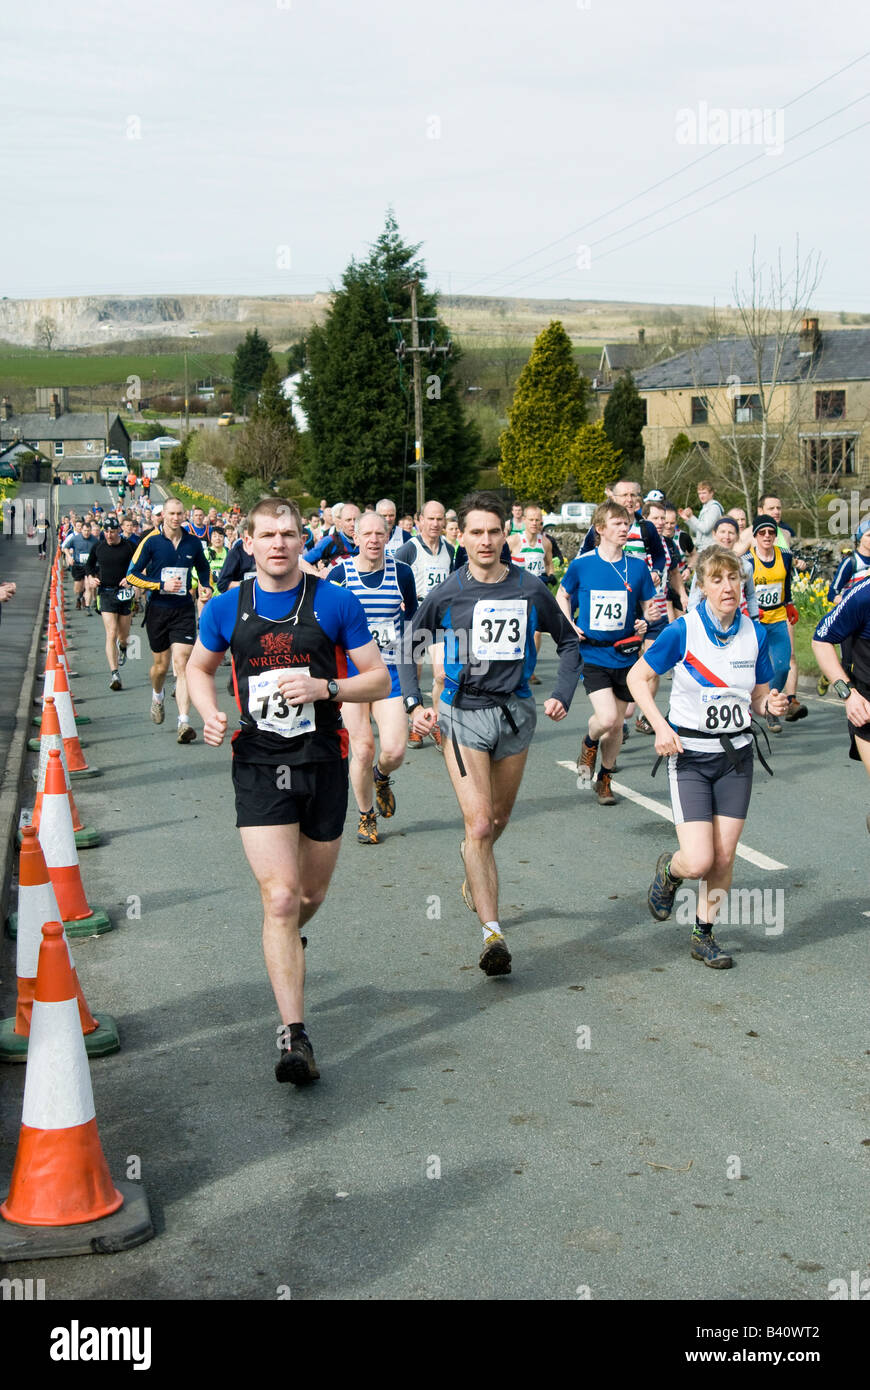 Los corredores que compiten en los tres picos desafío de carrera de larga distancia en Yorkshire, Inglaterra Foto de stock